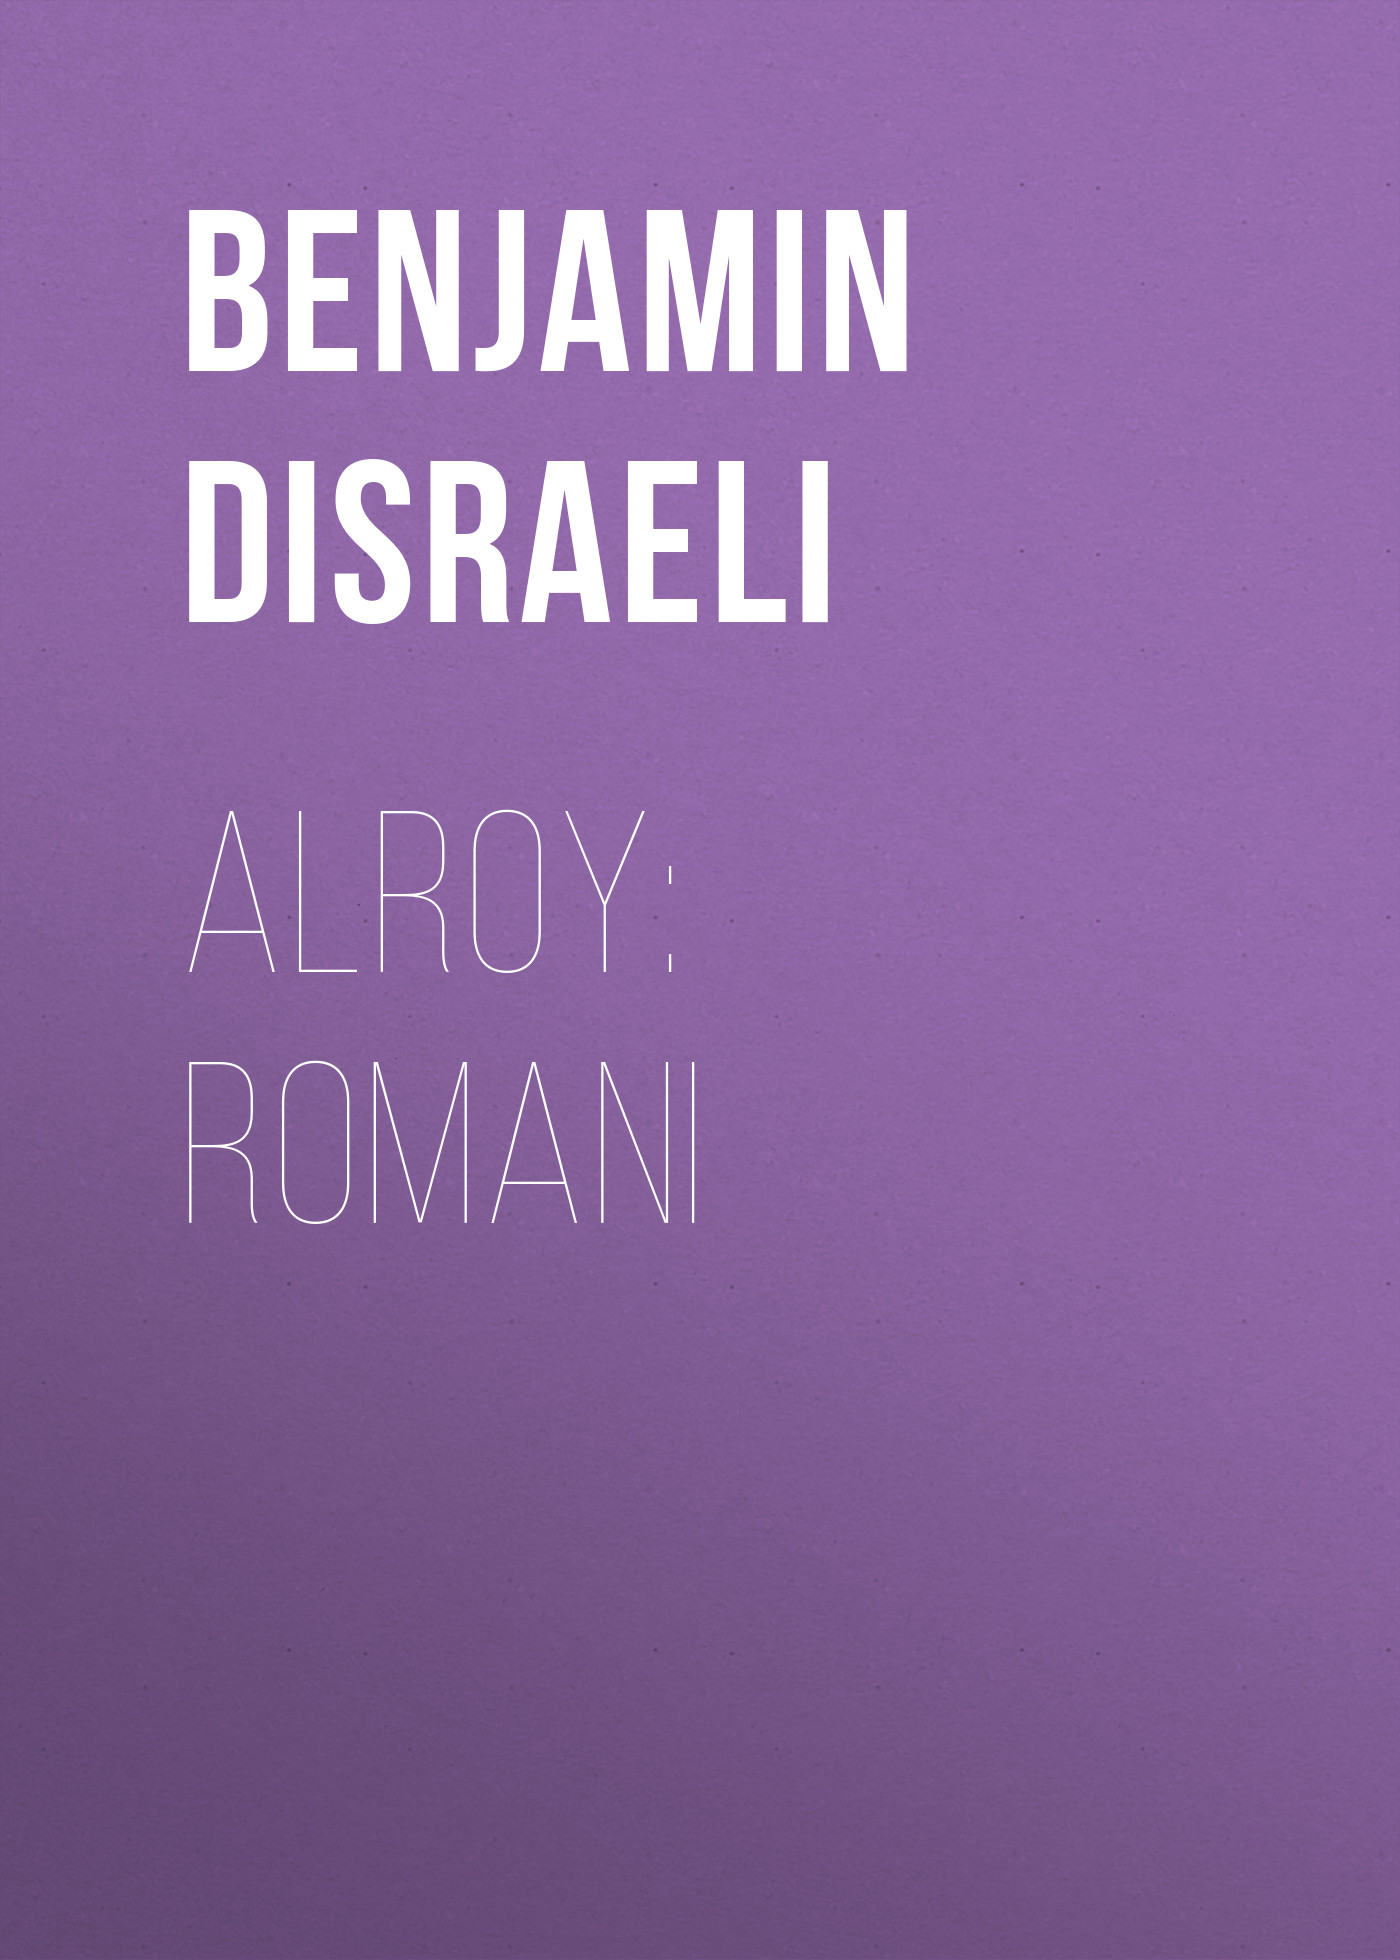 Книга Alroy: Romani из серии , созданная Benjamin Disraeli, может относится к жанру Историческая фантастика, Литература 19 века, Зарубежная старинная литература, Зарубежная классика, Исторические приключения. Стоимость электронной книги Alroy: Romani с идентификатором 36367662 составляет 0 руб.